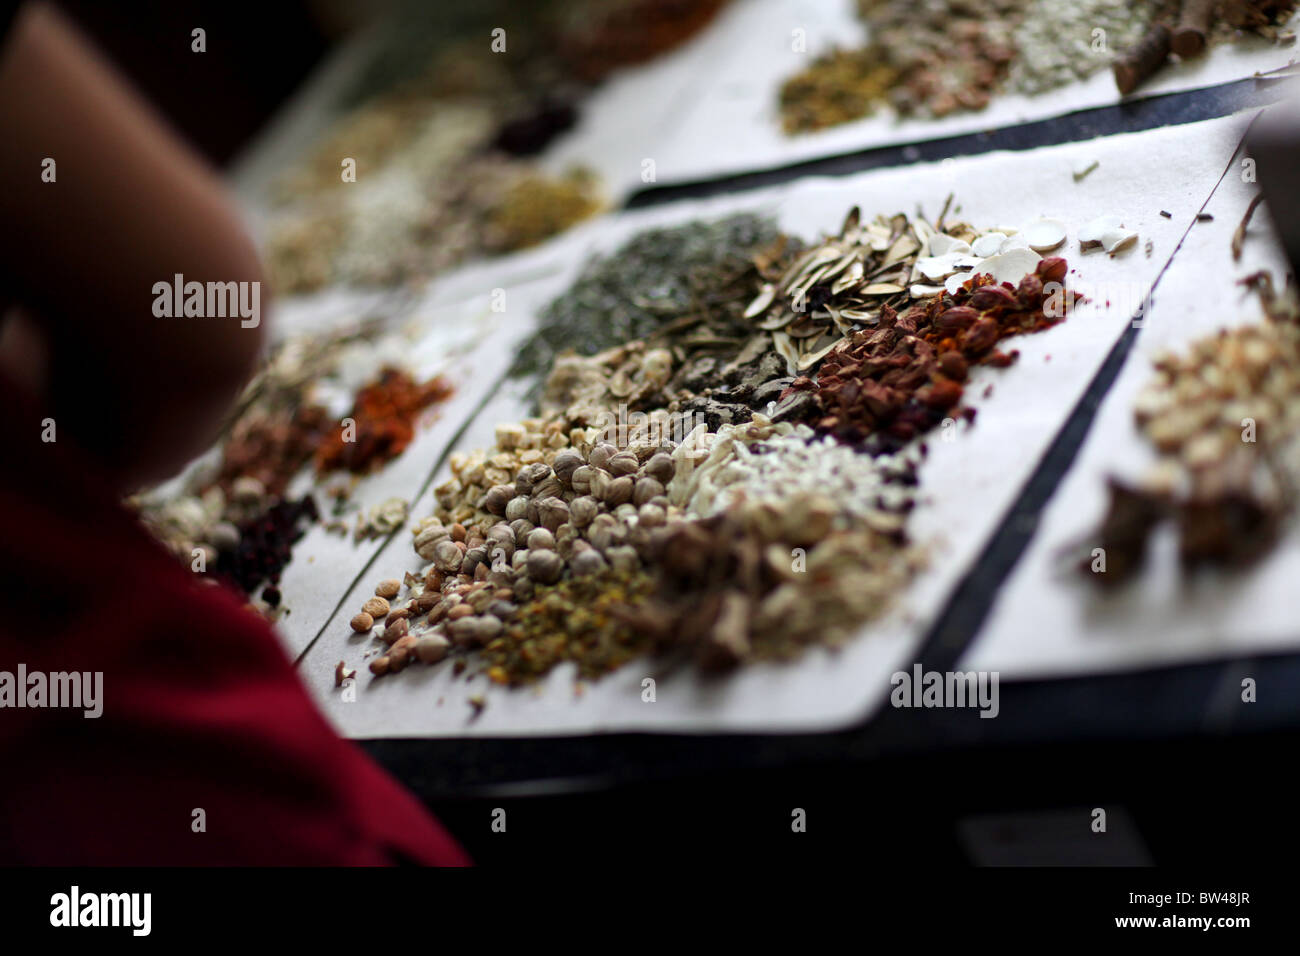 Personal presciptions essendo preparata al Fulintang Cinese tradizionale a base di erbe Store di Kunming, in Cina. Foto Stock